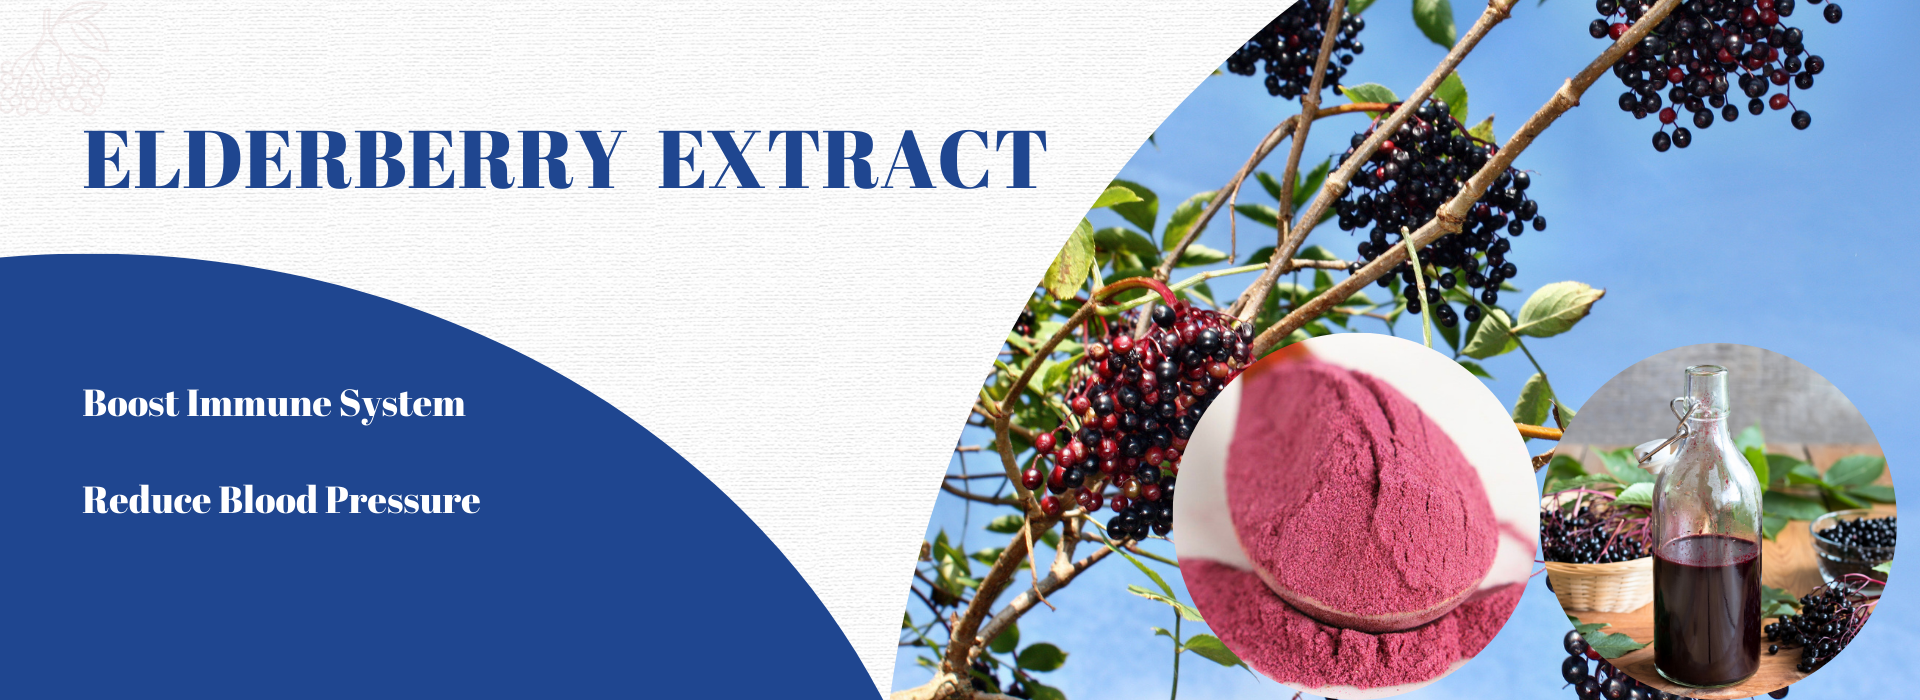 elderberry extract